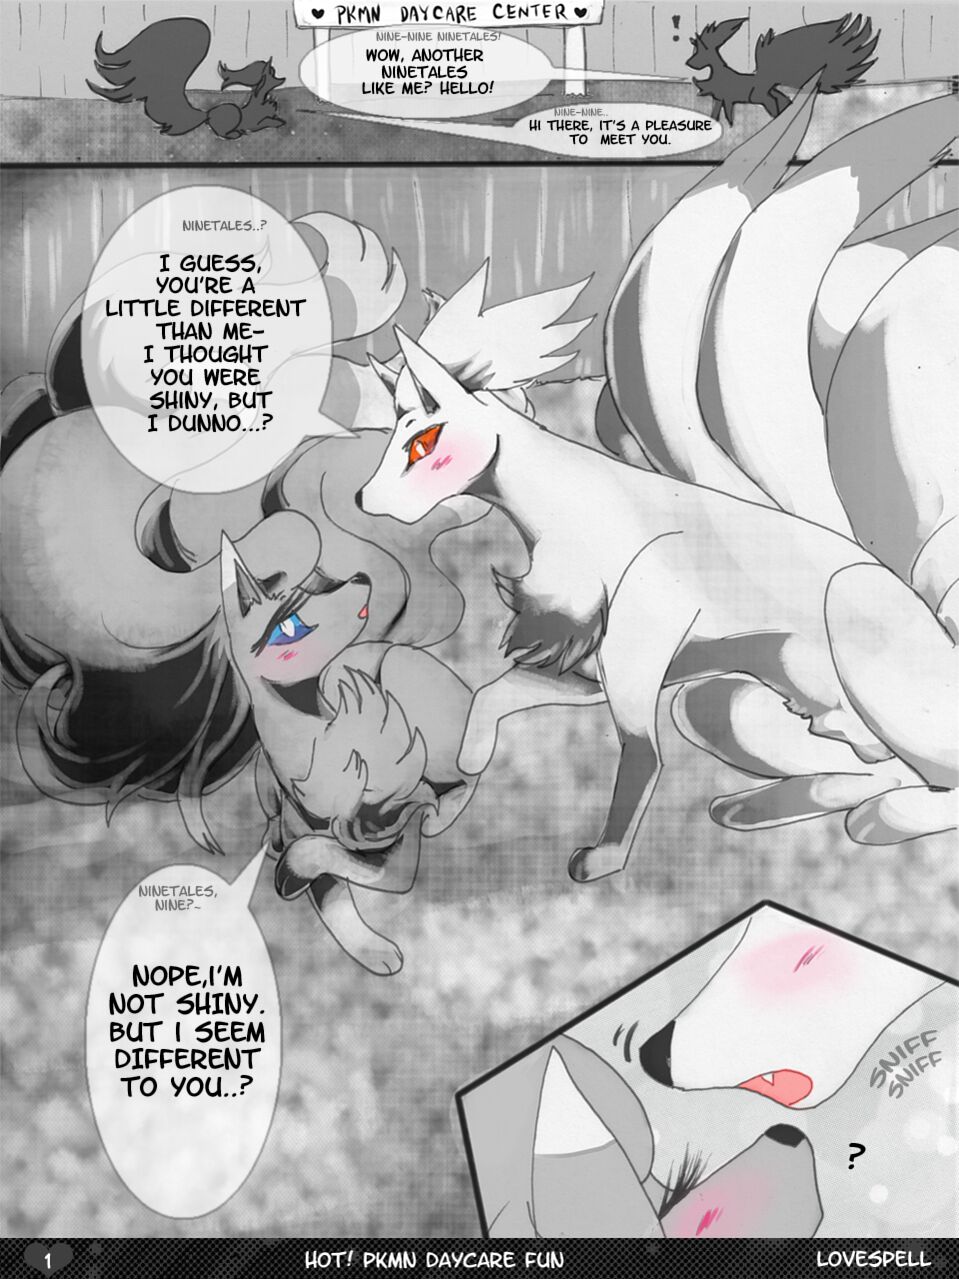 hot-pokemon-daycare-fun_2315558-002 - Pokemon Porn Comics